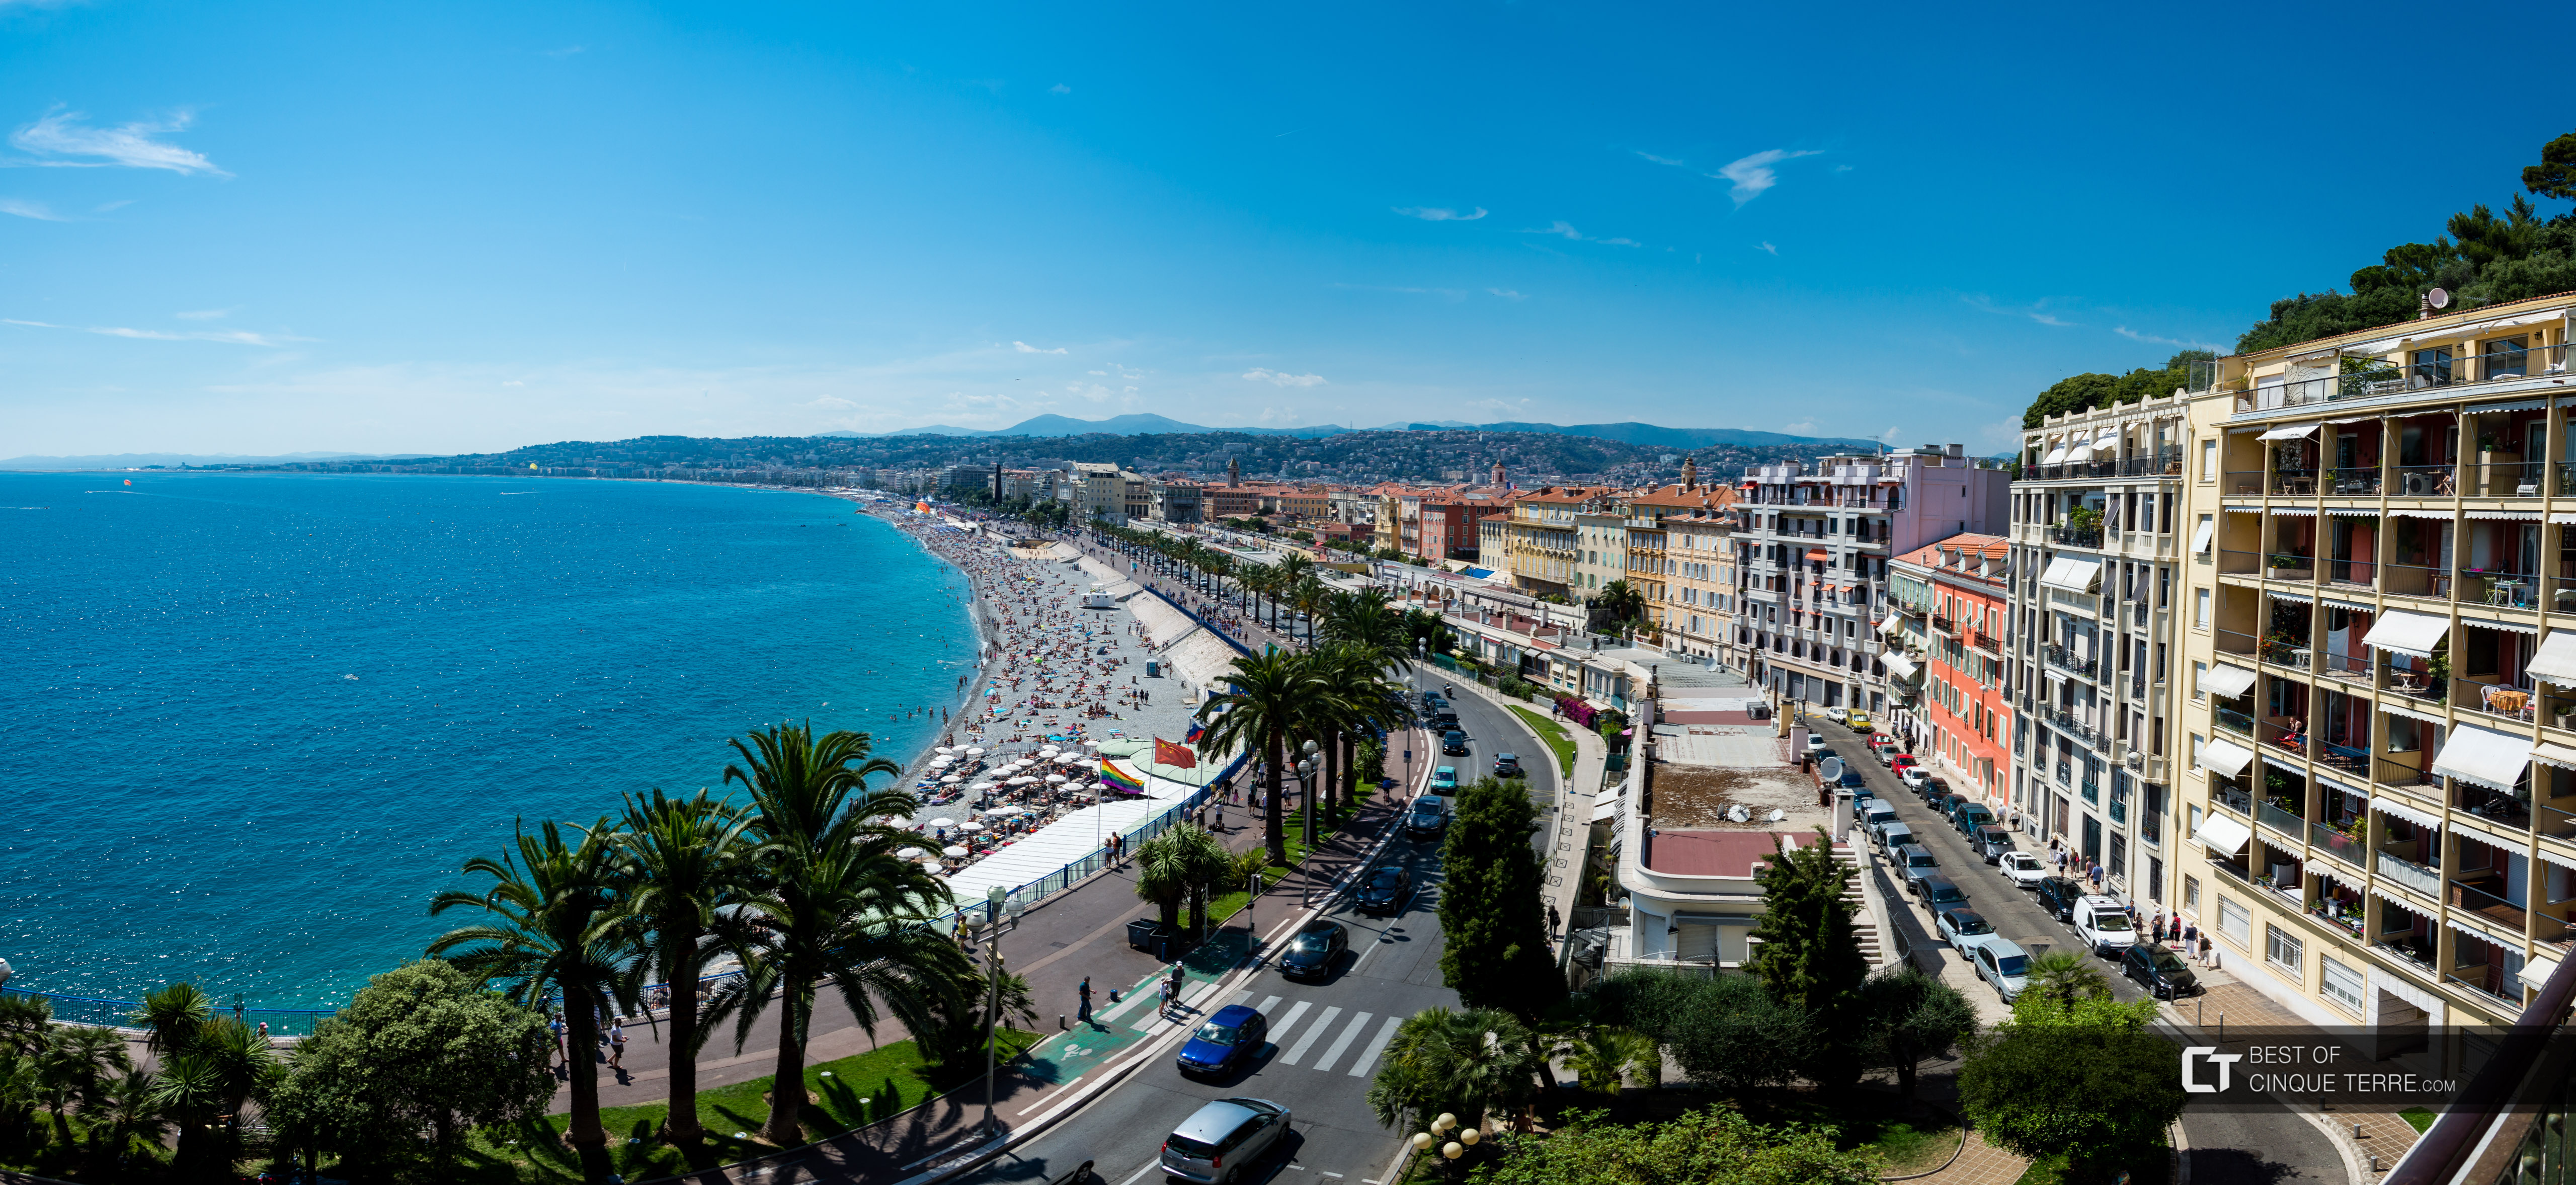 La Promenade des Anglais, vue depuis la colline du château, Nice, France